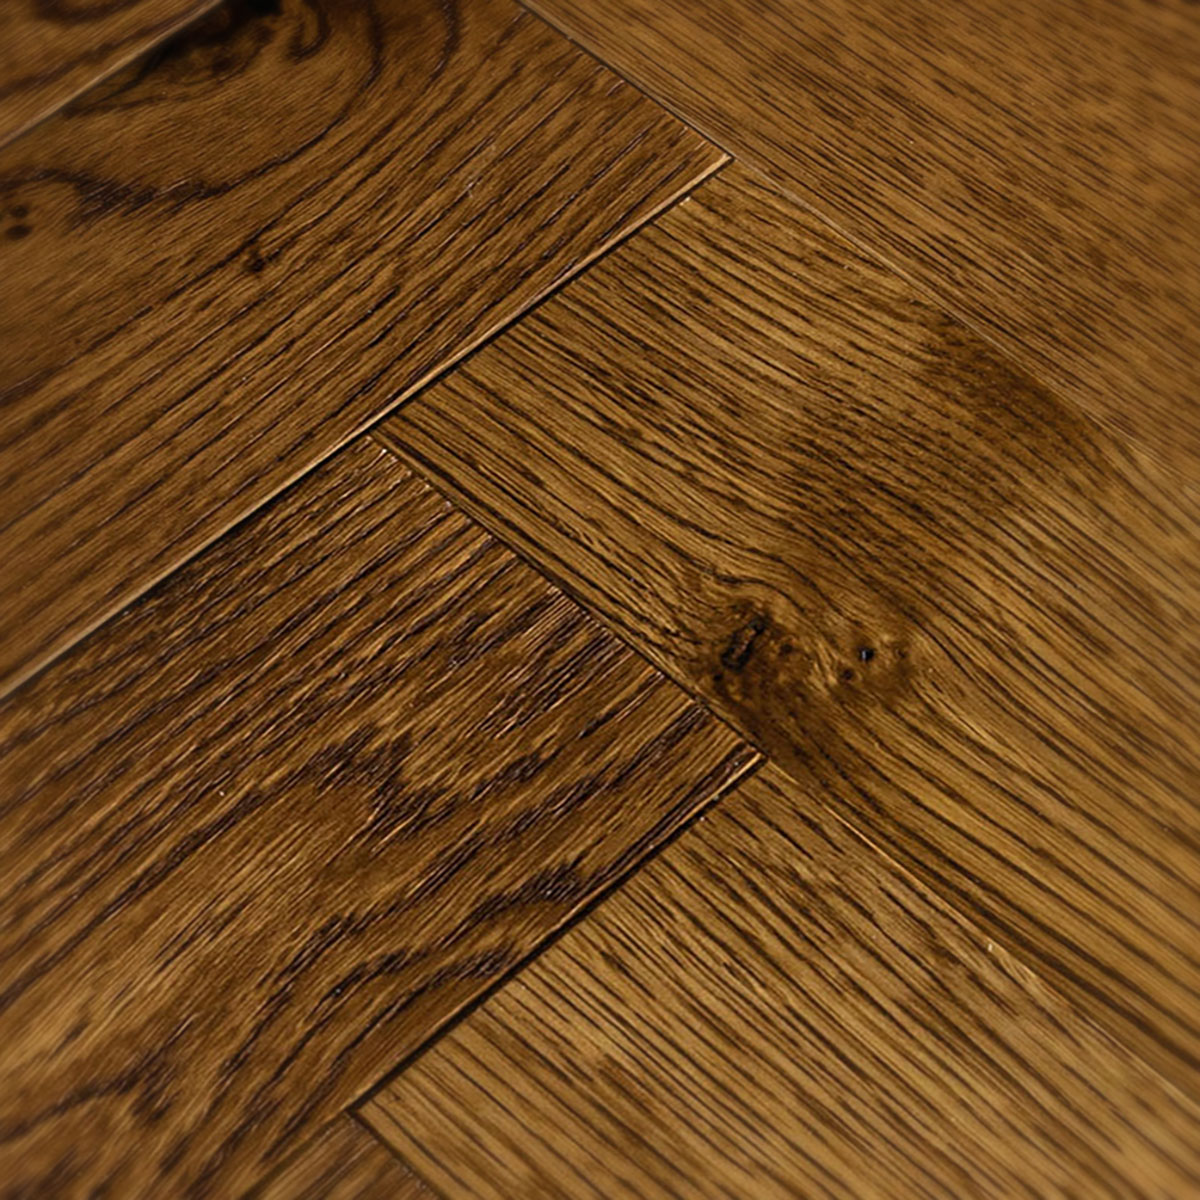 Key Drive - Brushed Rustic Grade Parquet Oak Floor